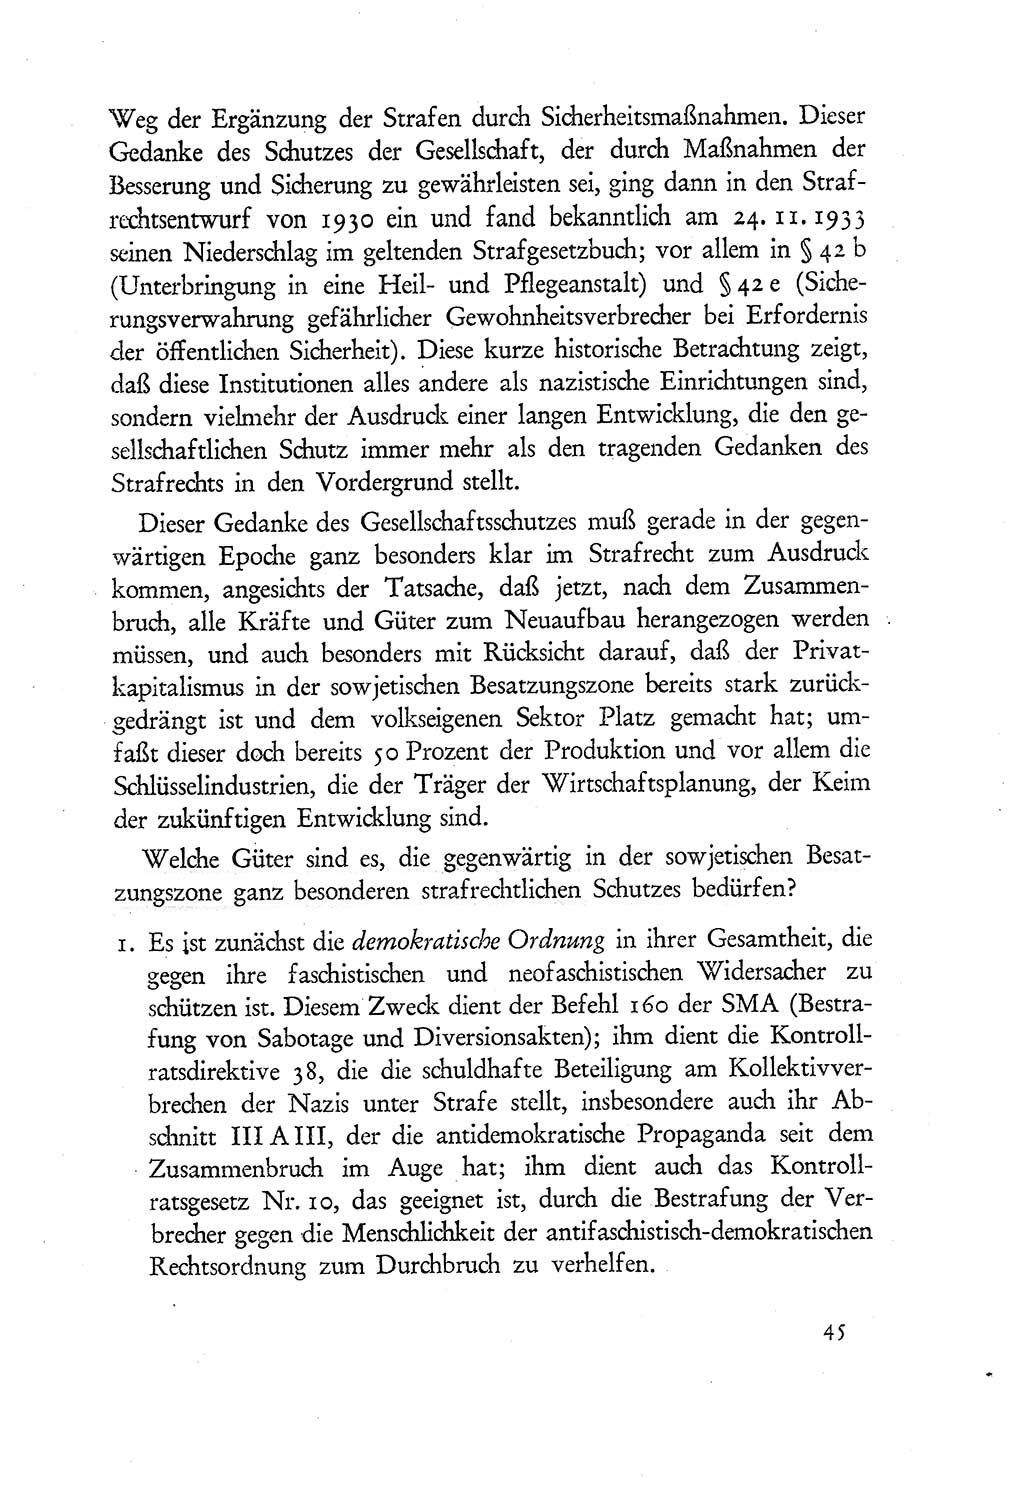 Probleme eines demokratischen Strafrechts [Sowjetische Besatzungszone (SBZ) Deutschlands] 1949, Seite 45 (Probl. Strafr. SBZ Dtl. 1949, S. 45)